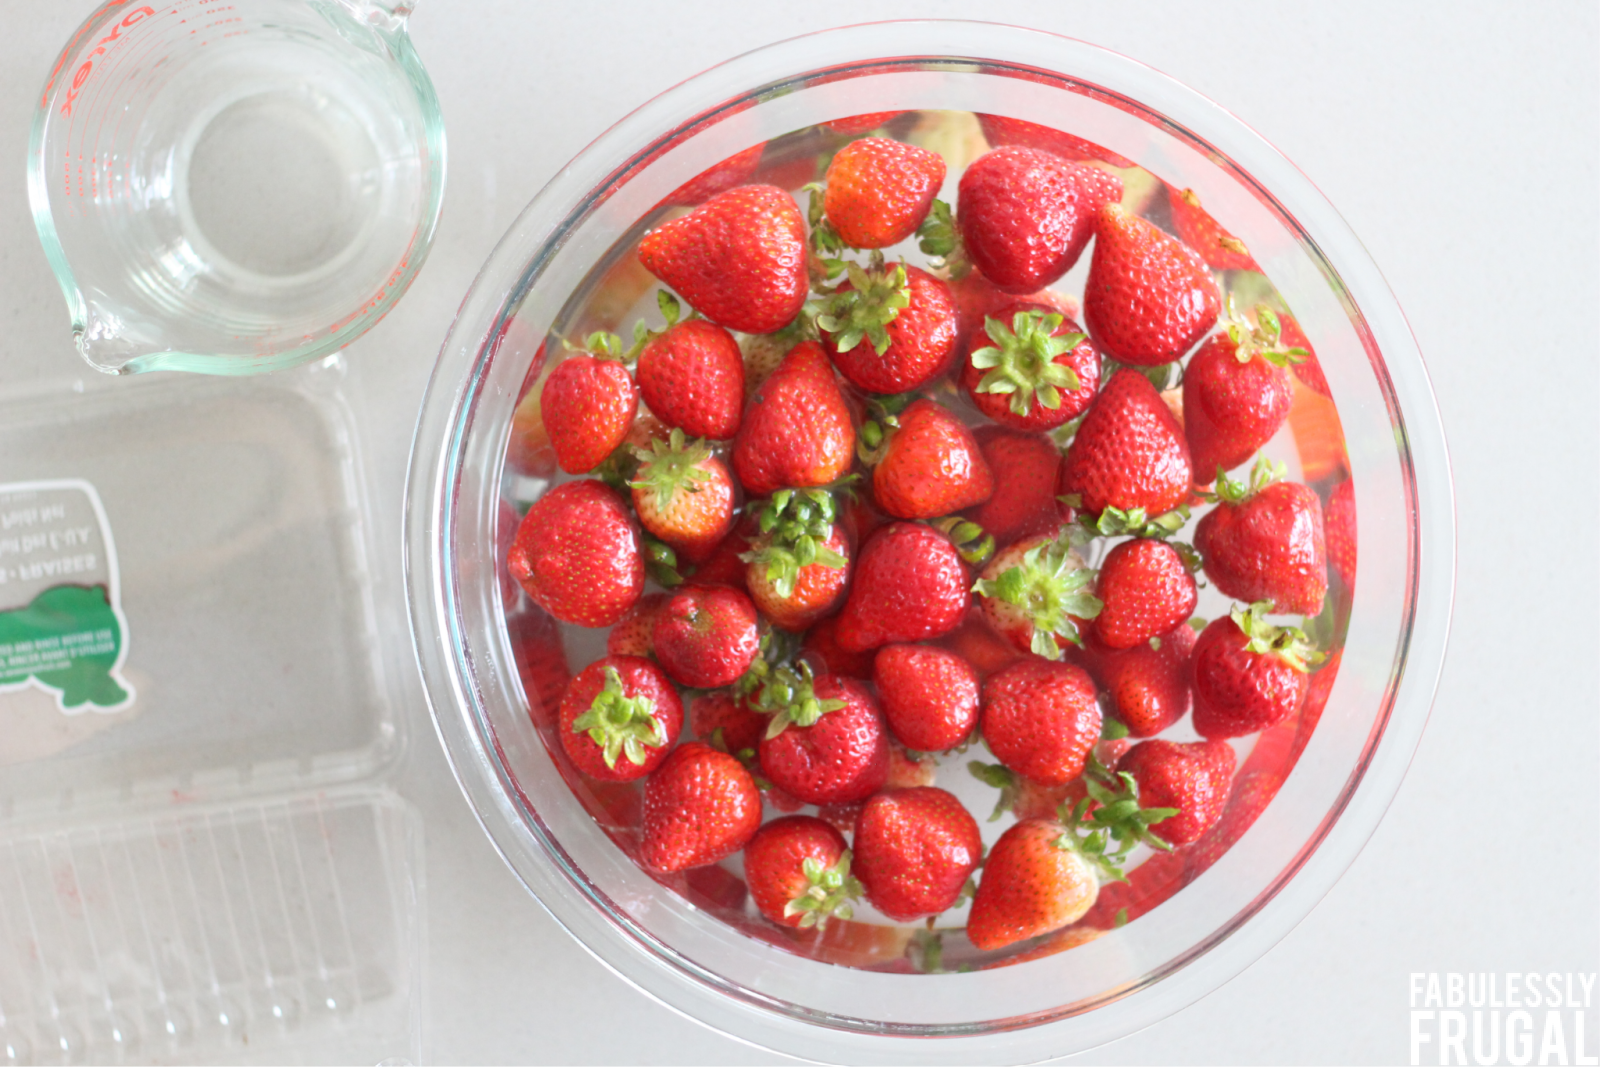 soak strawberries in vinegar water